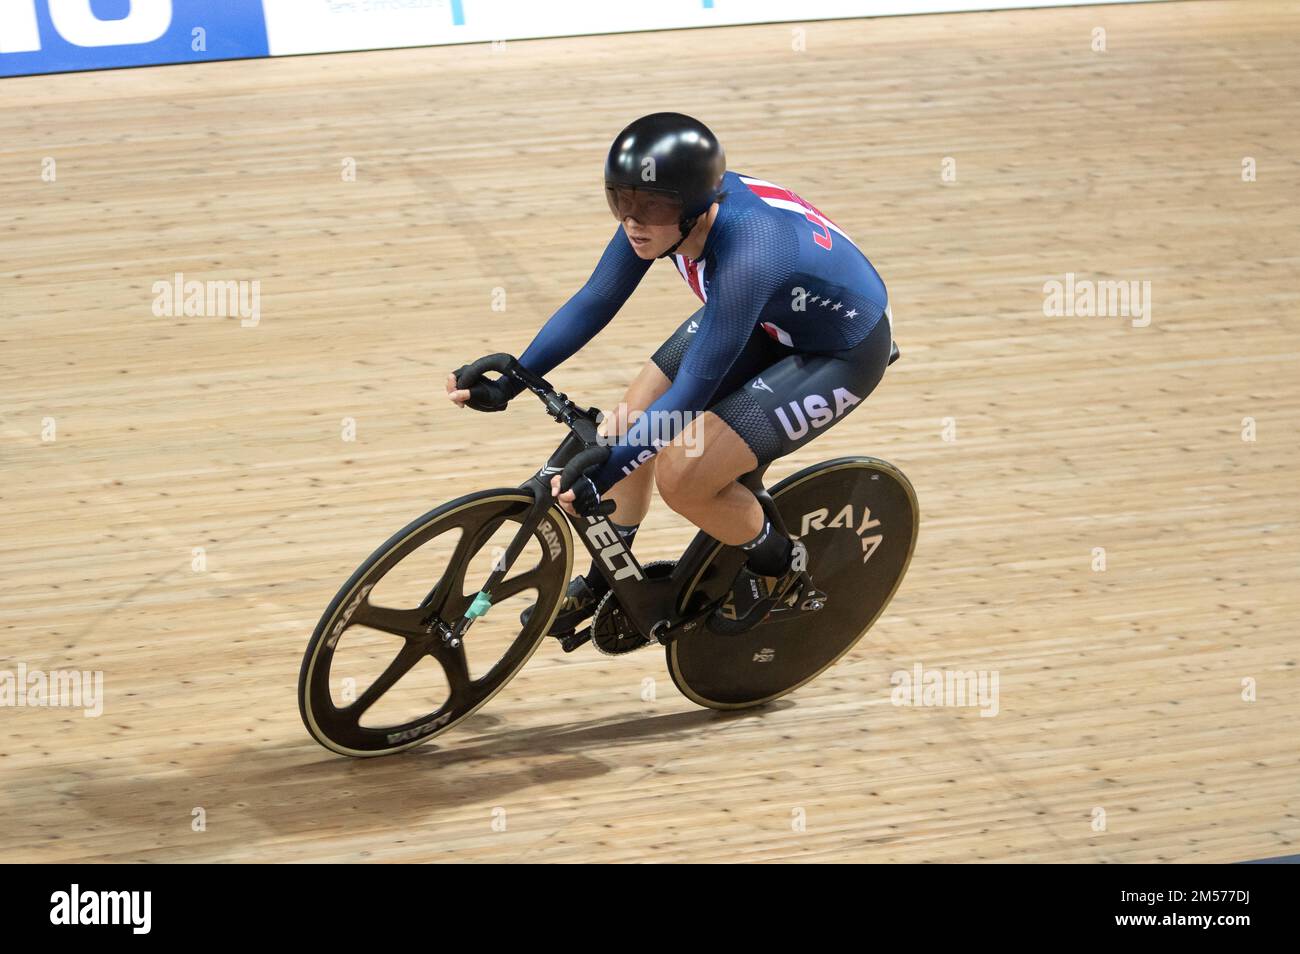 Jennifer Valente, des États-Unis, remportant l'événement omnium féminin, Championnats du monde de cyclisme sur piste UCI 2022. Banque D'Images